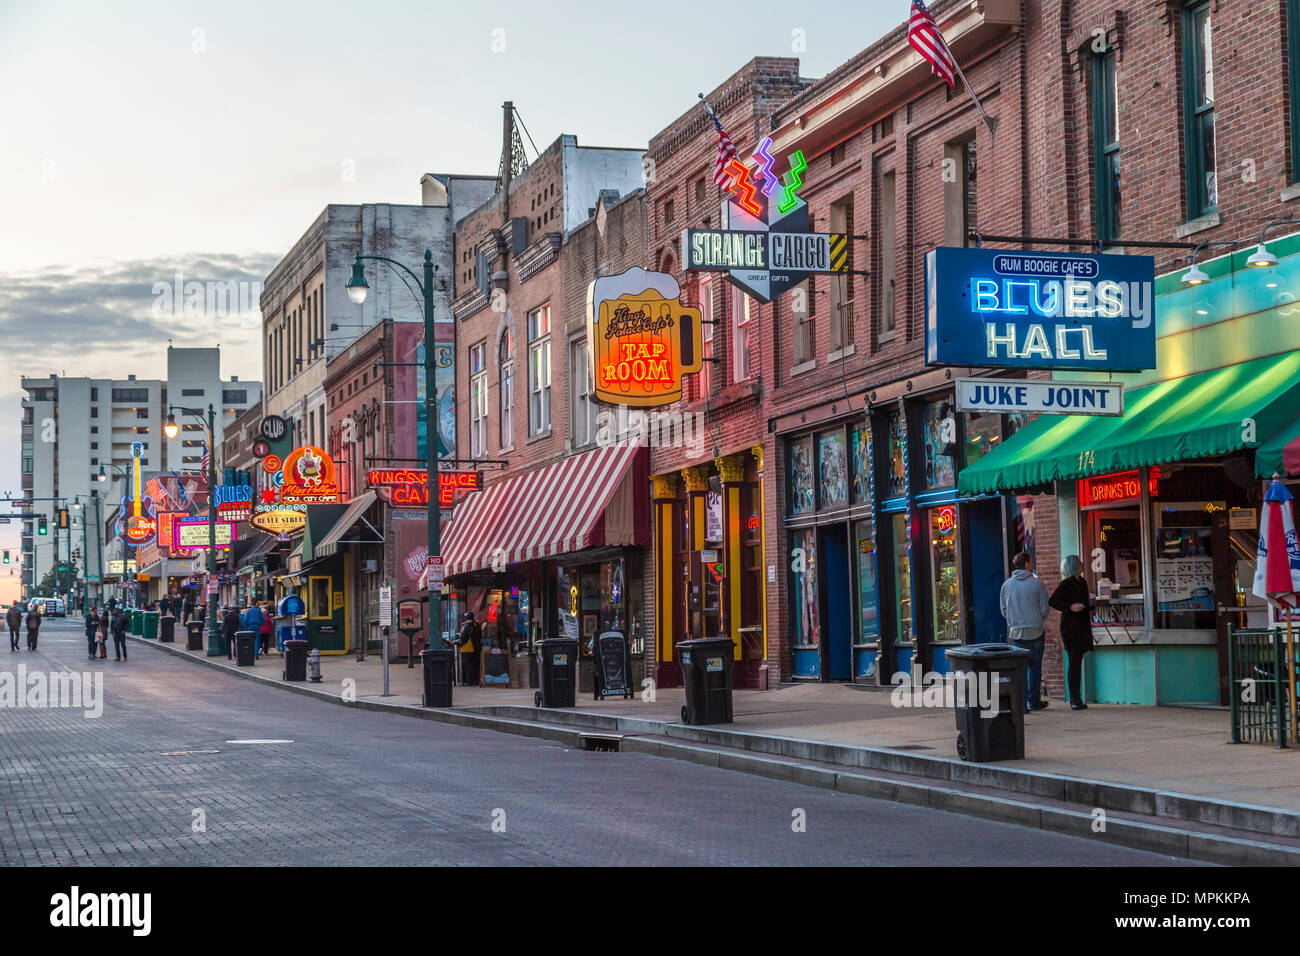 Historische Beale Street, bekannt als die Heimat der Blues in Memphis, Tennessee, USA Stockfoto